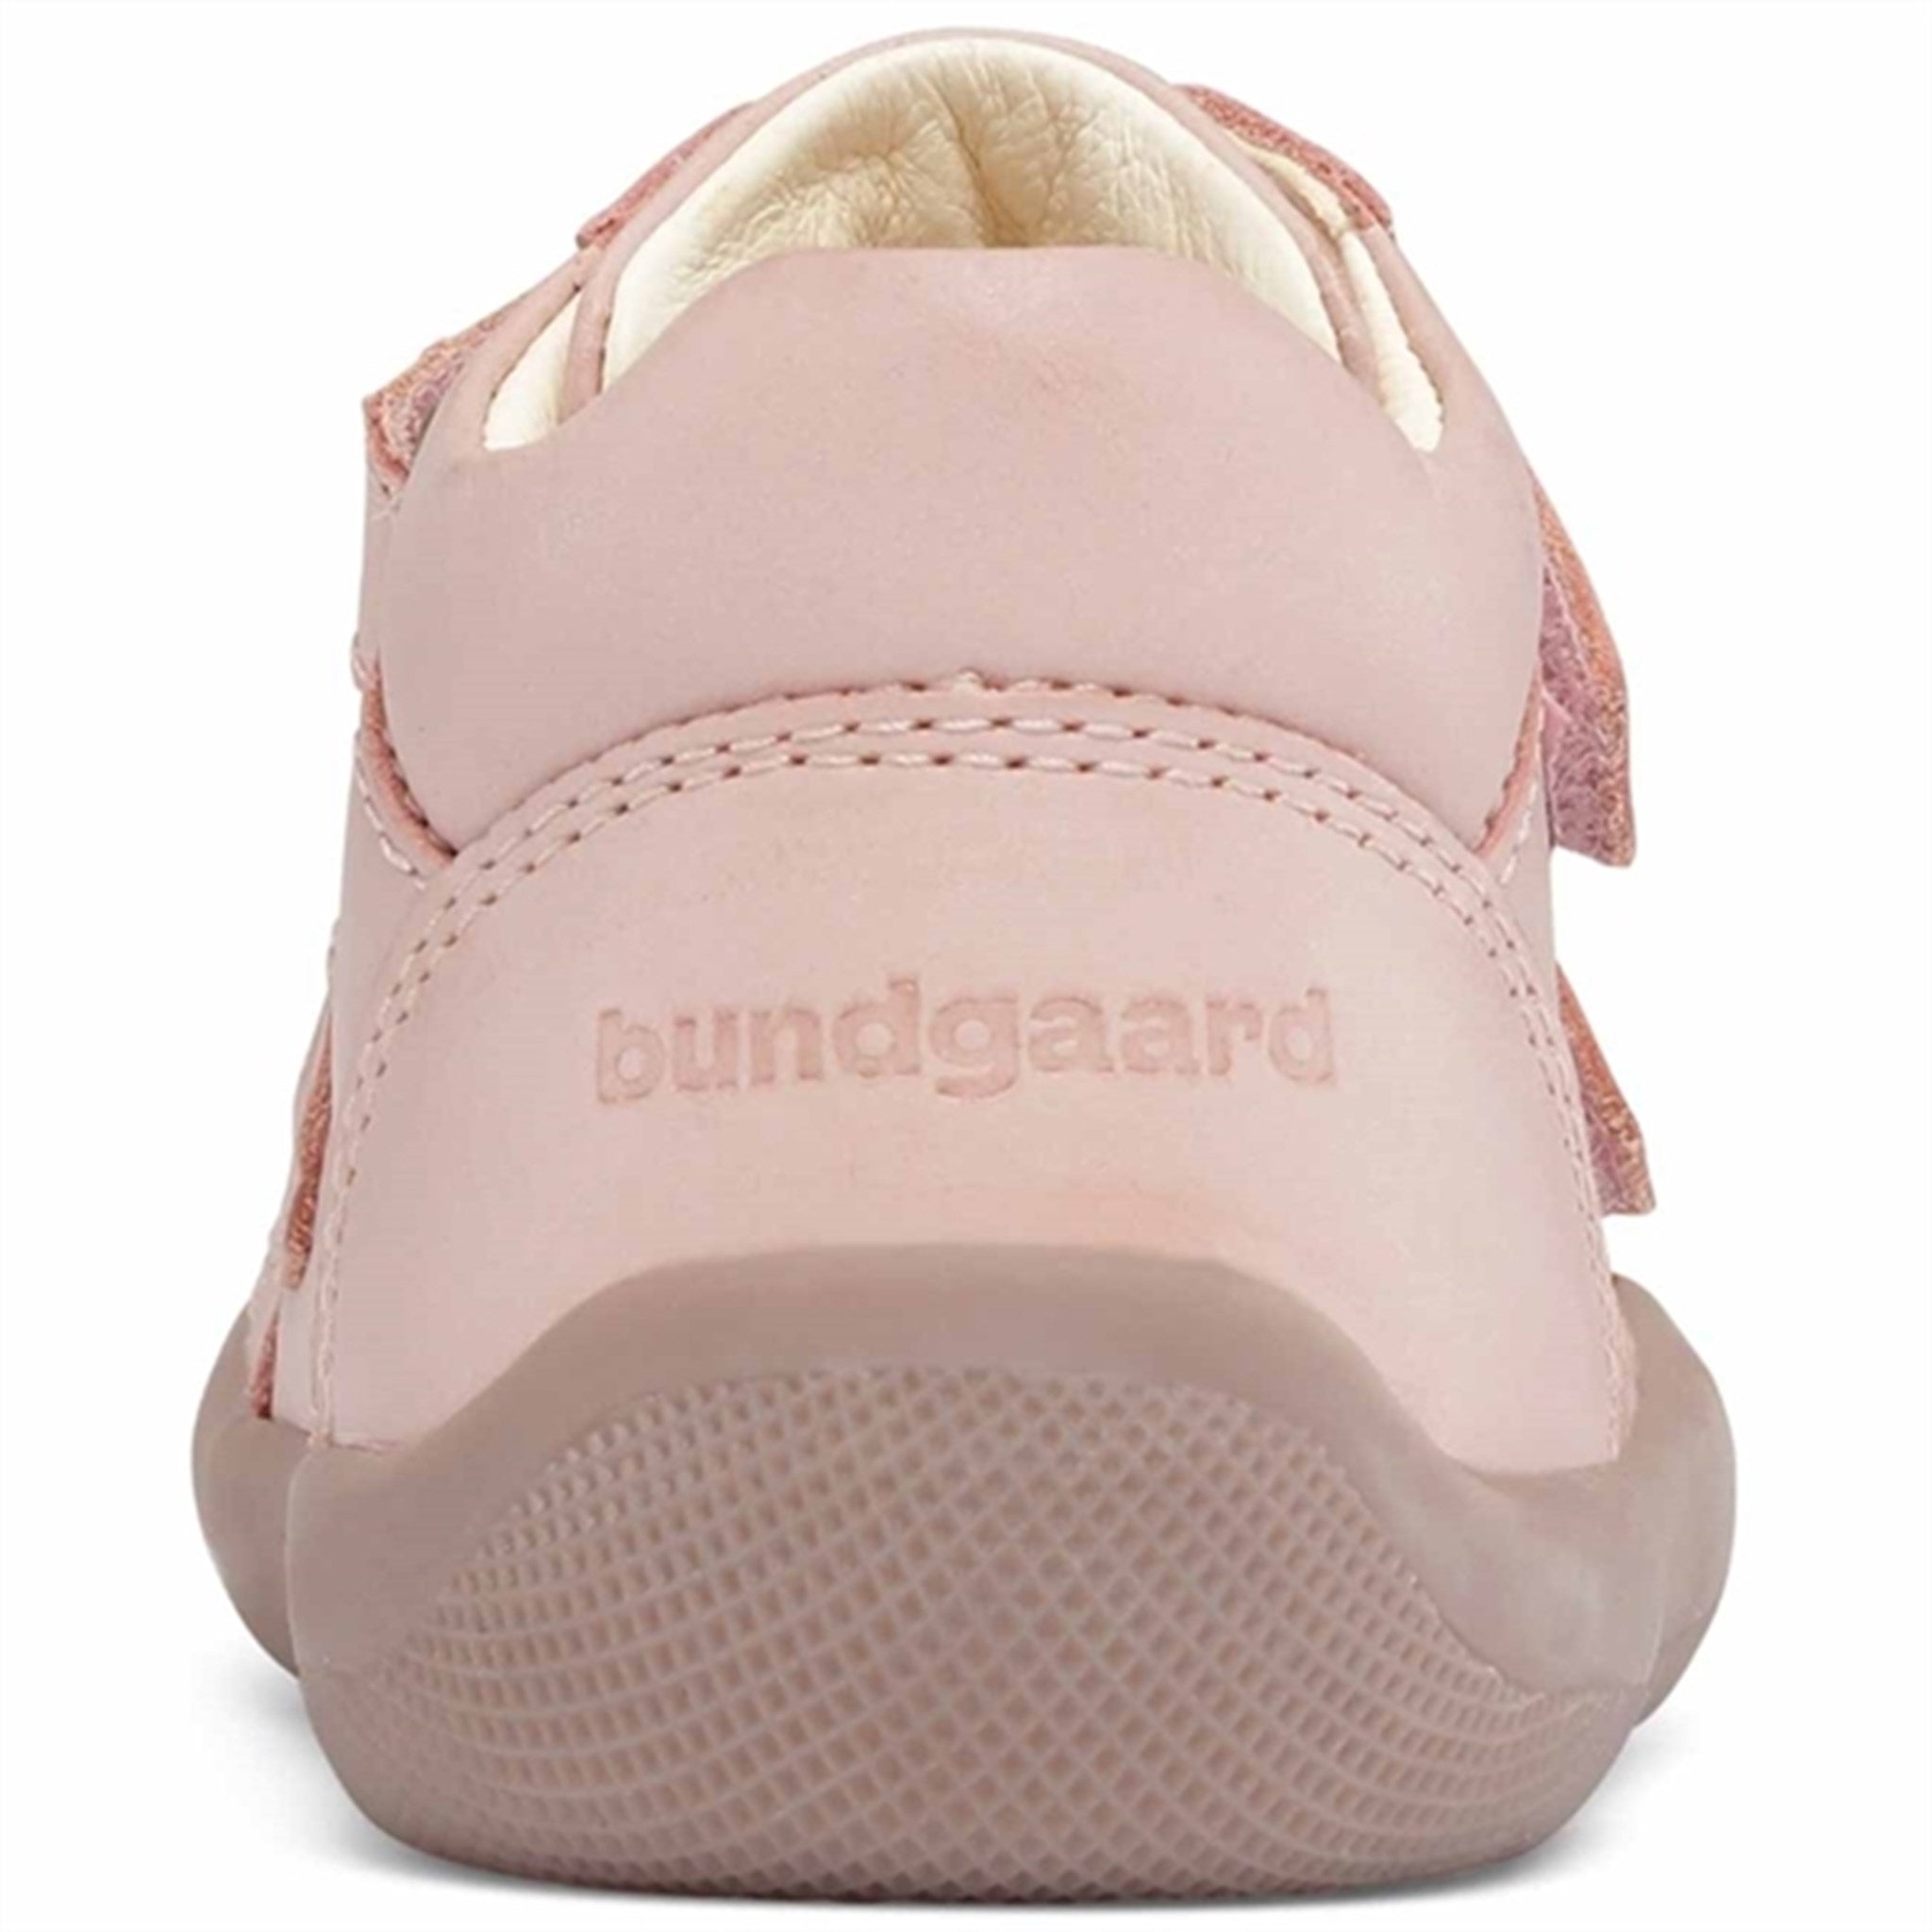 Bundgaard The Walk Kardborre Shoes Old Rose 3